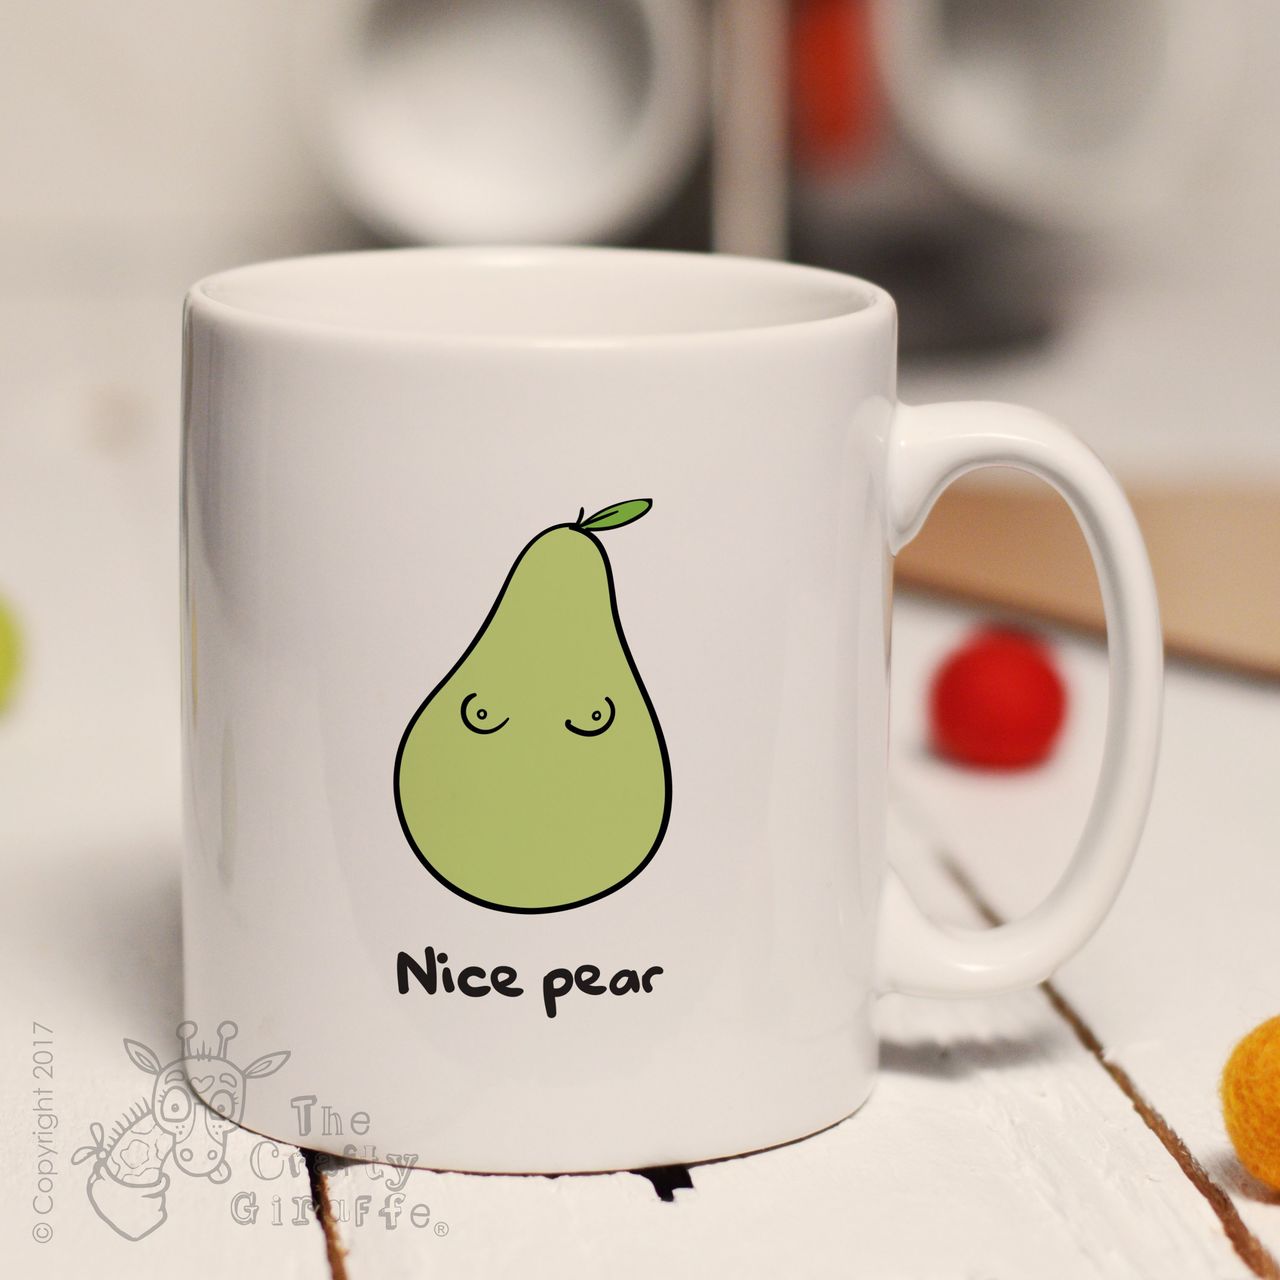 Nice pear mug